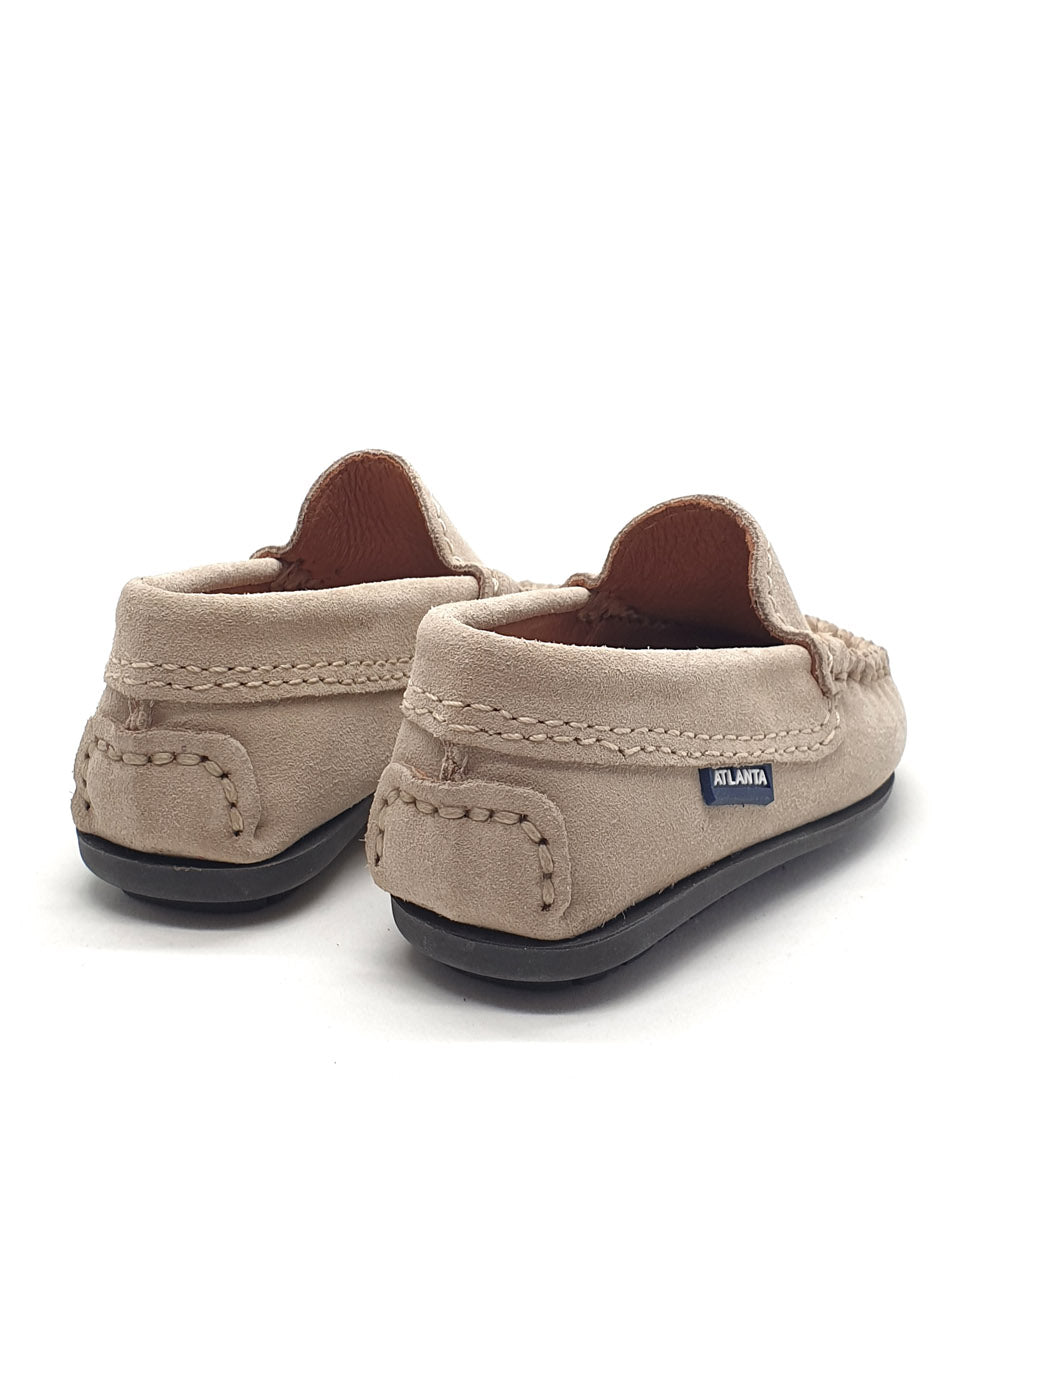 Atlanta Mocassin- Baby Shoes Moccasins Beige-15G000